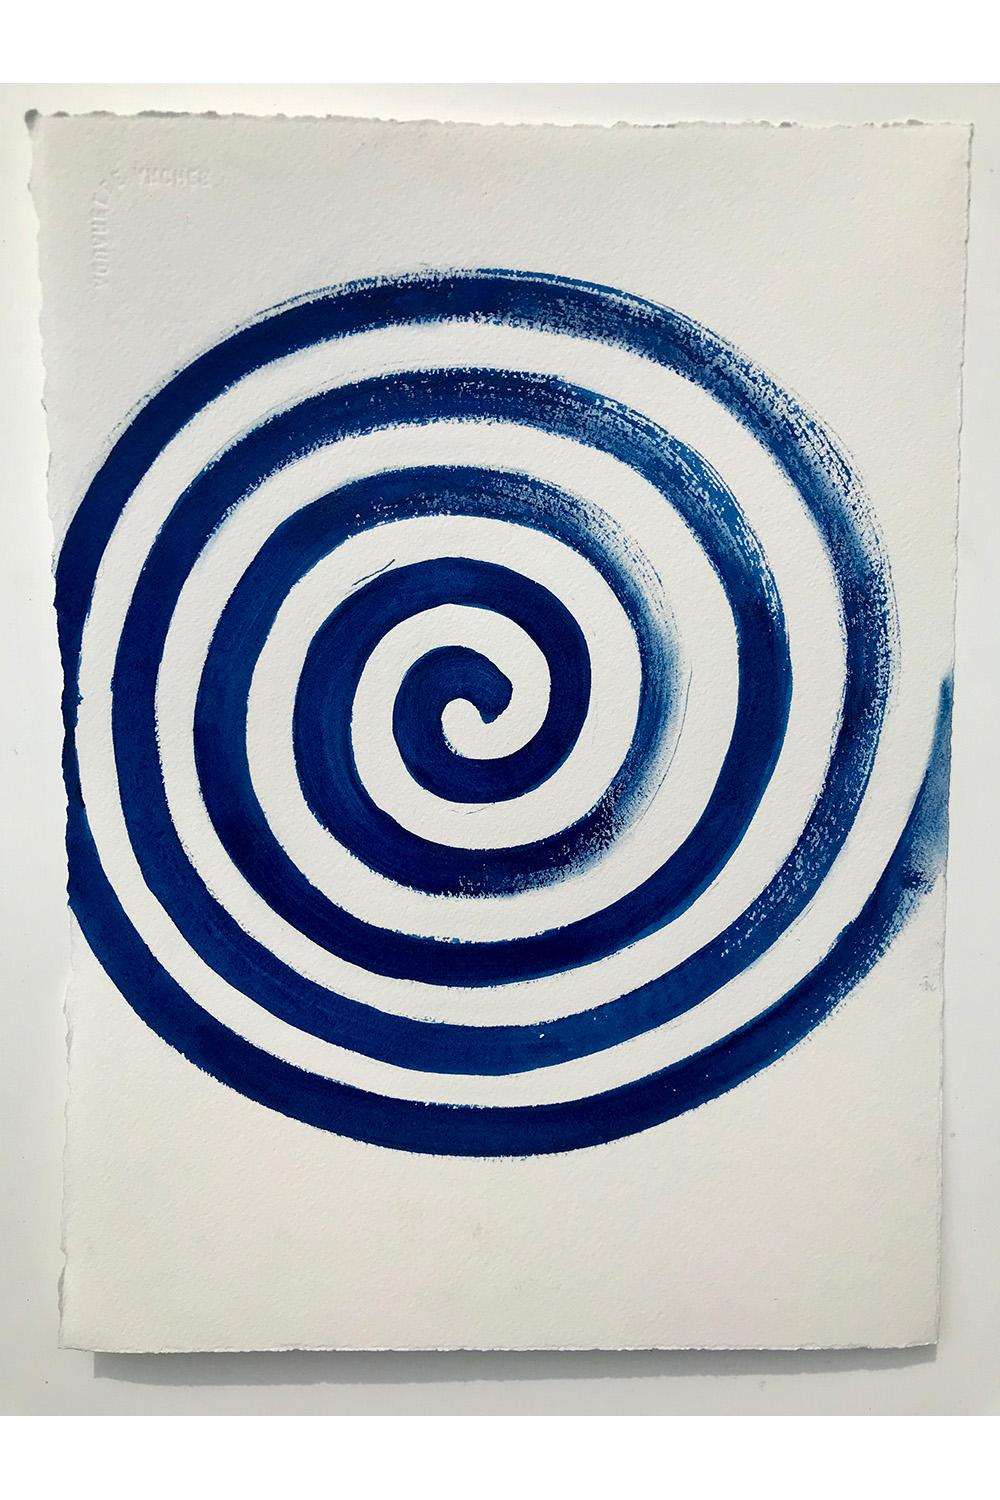 Abstract Drawing Matt Kinney - Life Spiral, Beacon, NY, 2020